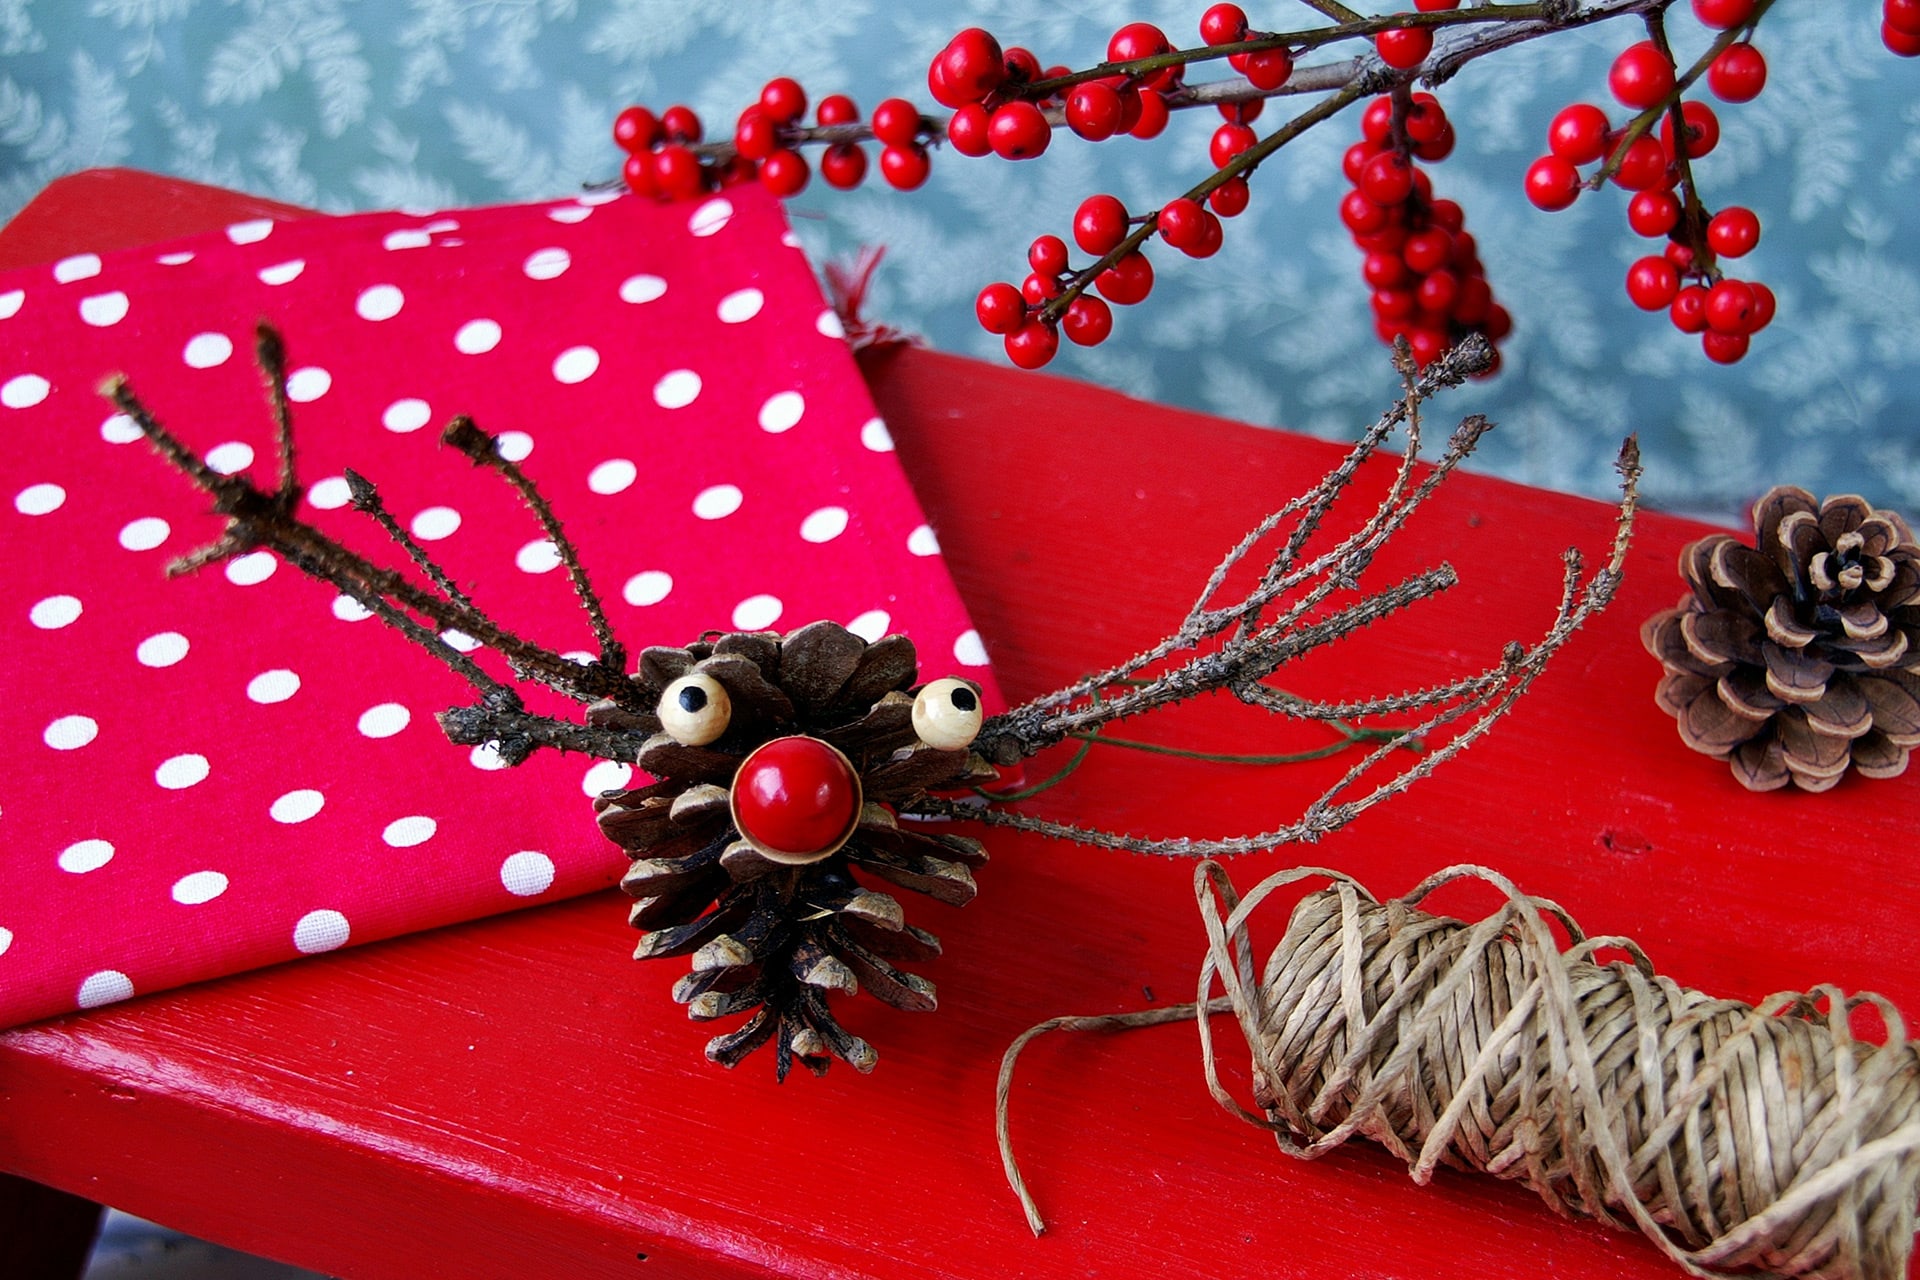  Weihnachtsgeschenke mit Kindern basteln | Elch aus Kordel und Tannenzapfen